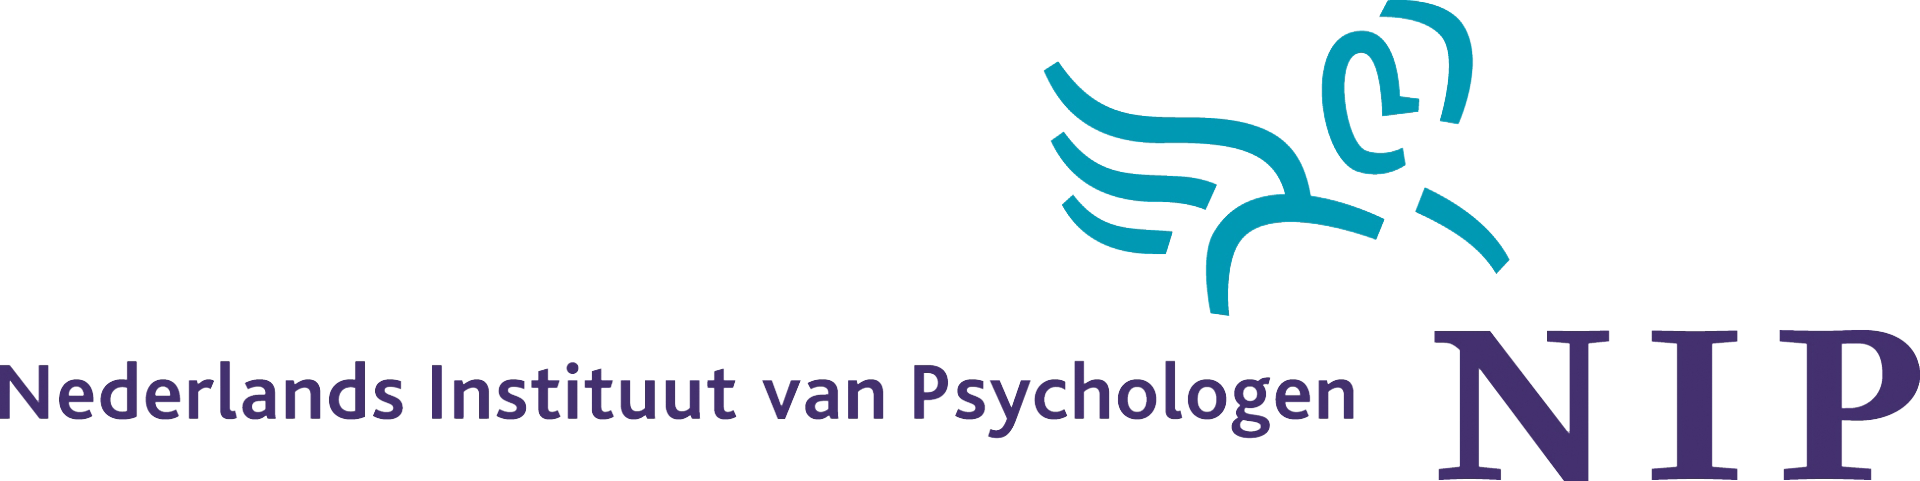 Aangesloten bij het Nederlands Instituut van Psychologen